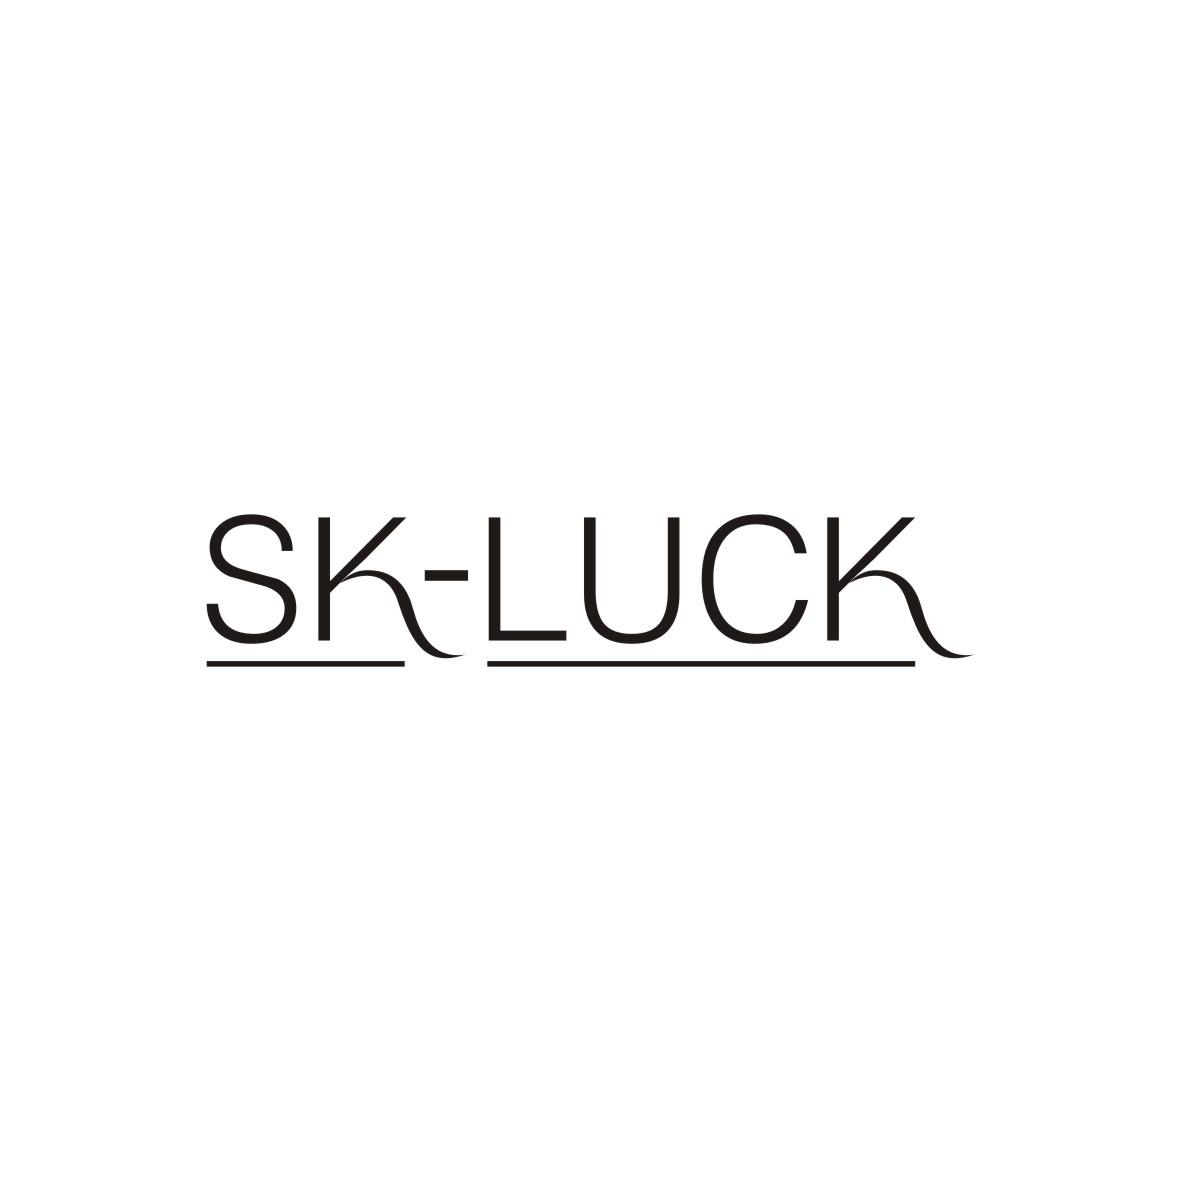 SK-LUCK